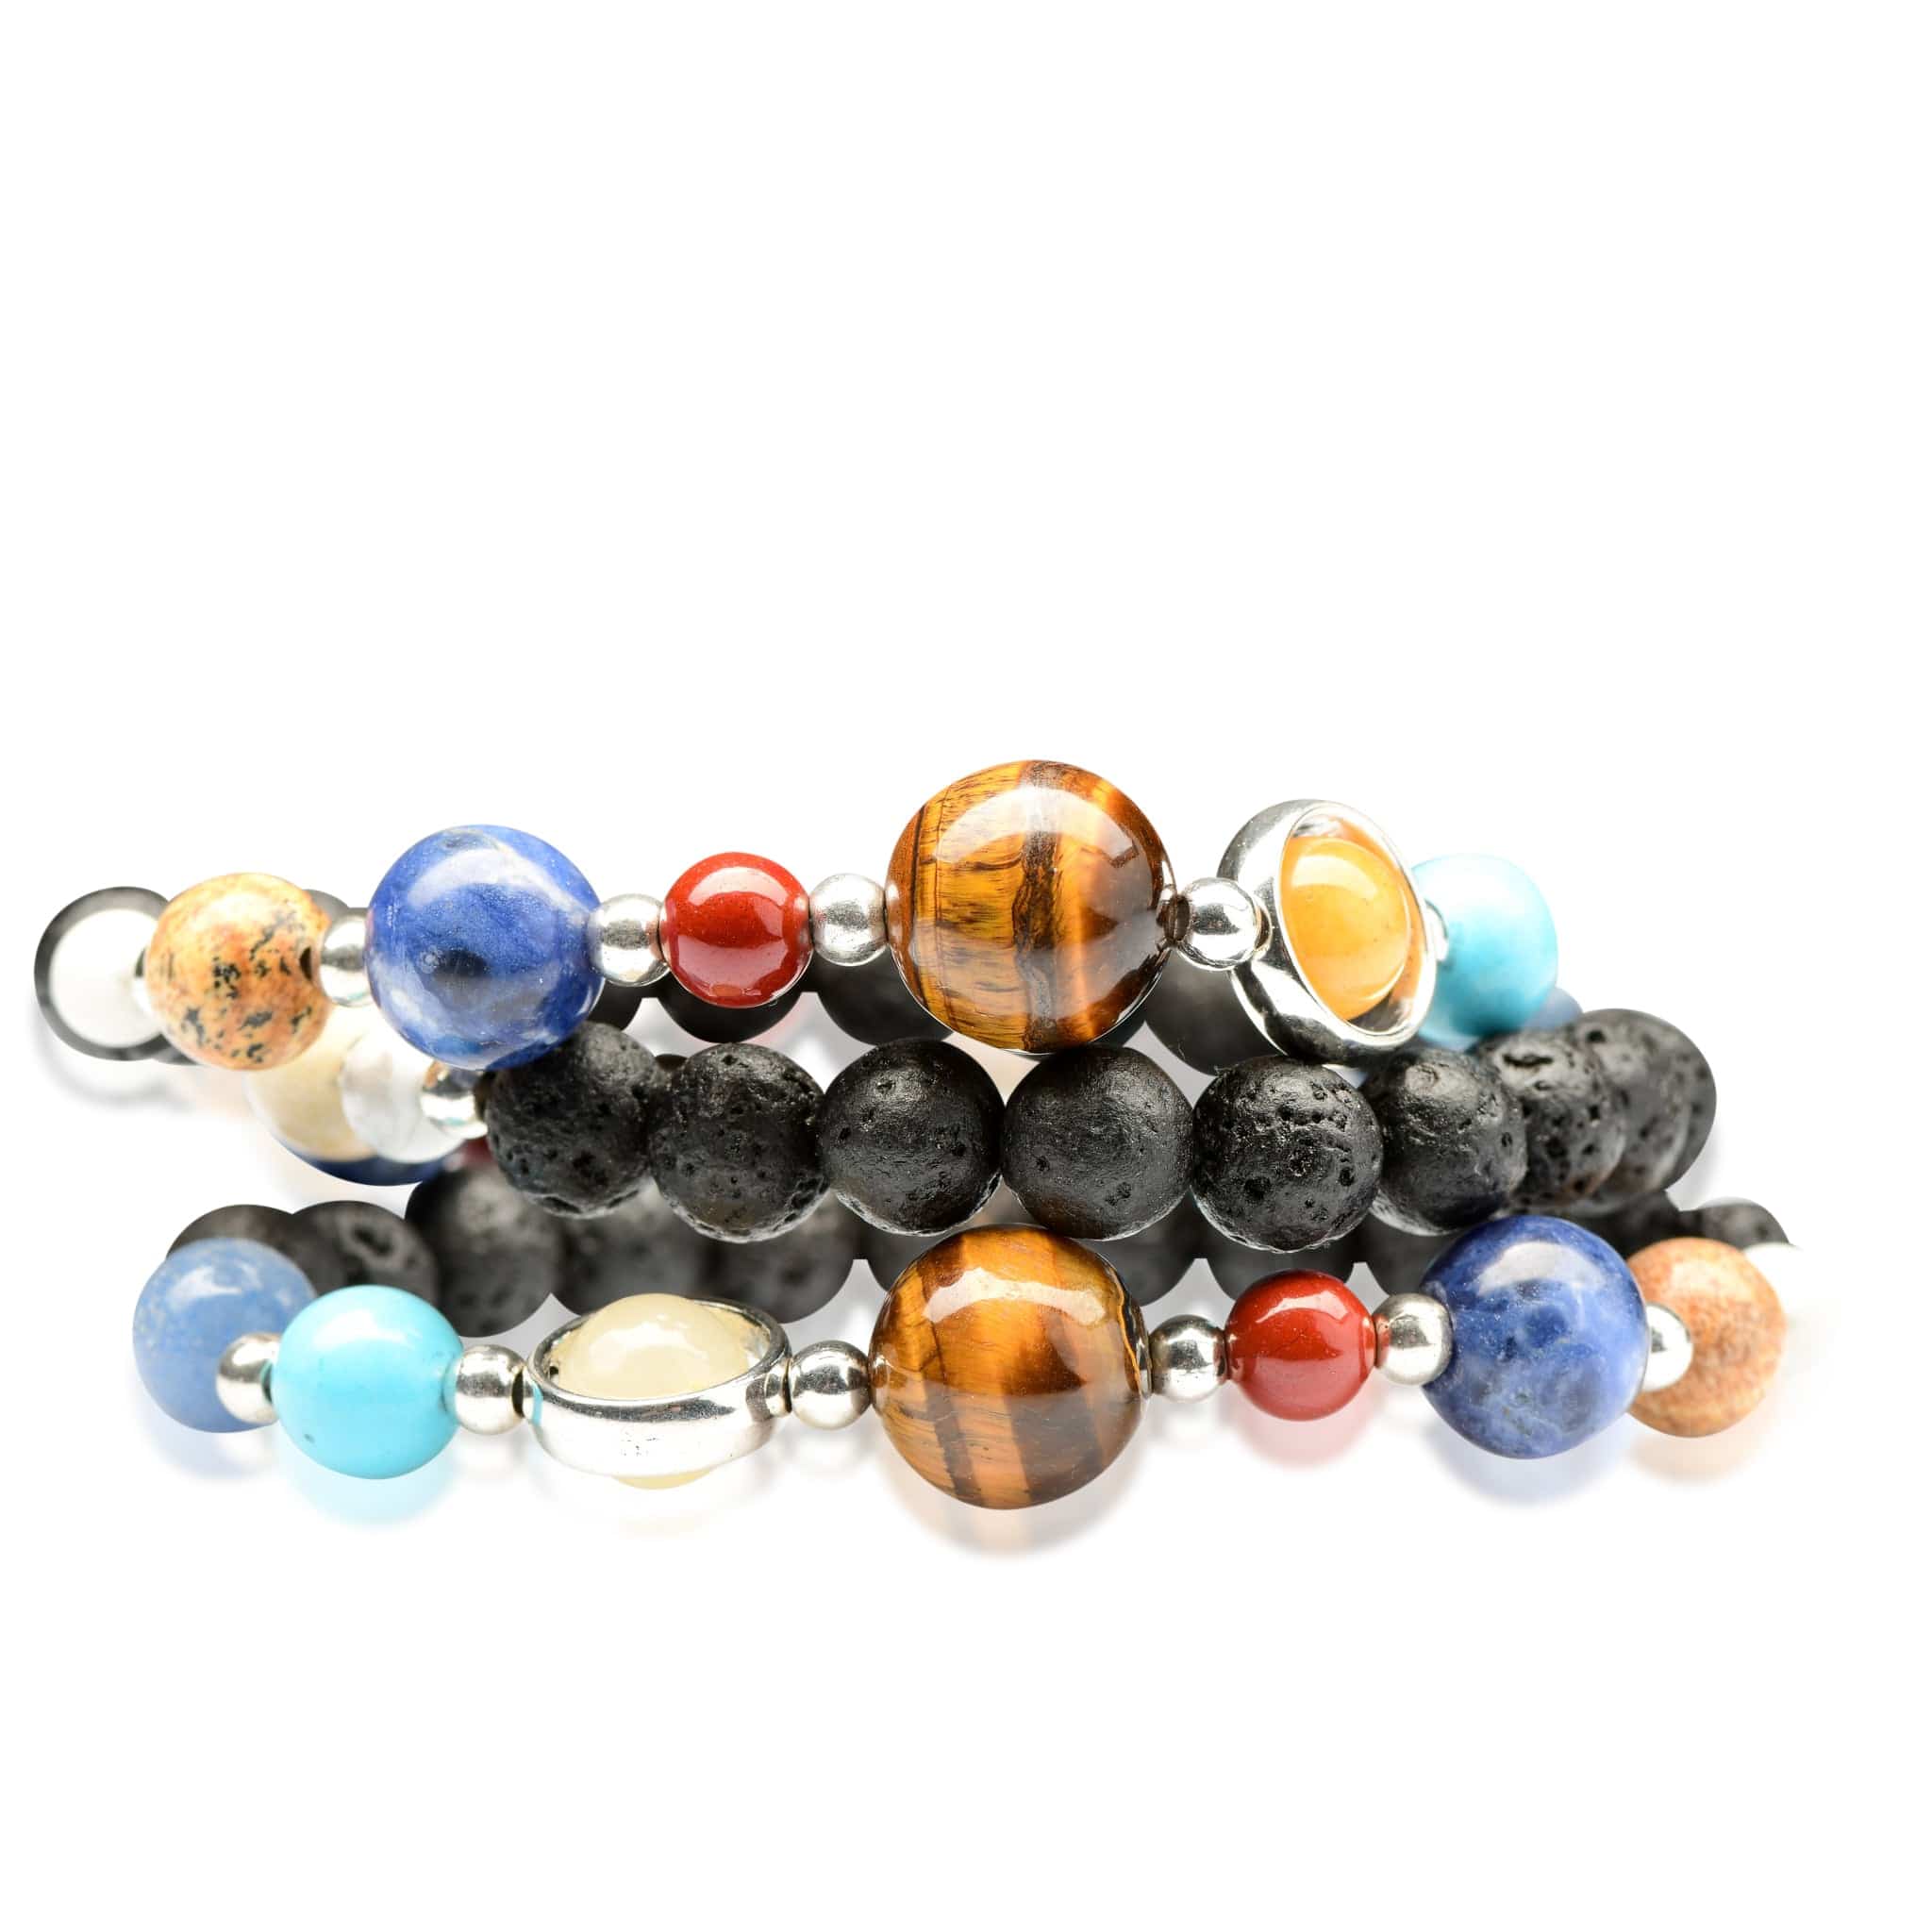 Blog | Turquoise stone benefits, Turquoise stone bracelet, Turquoise stone